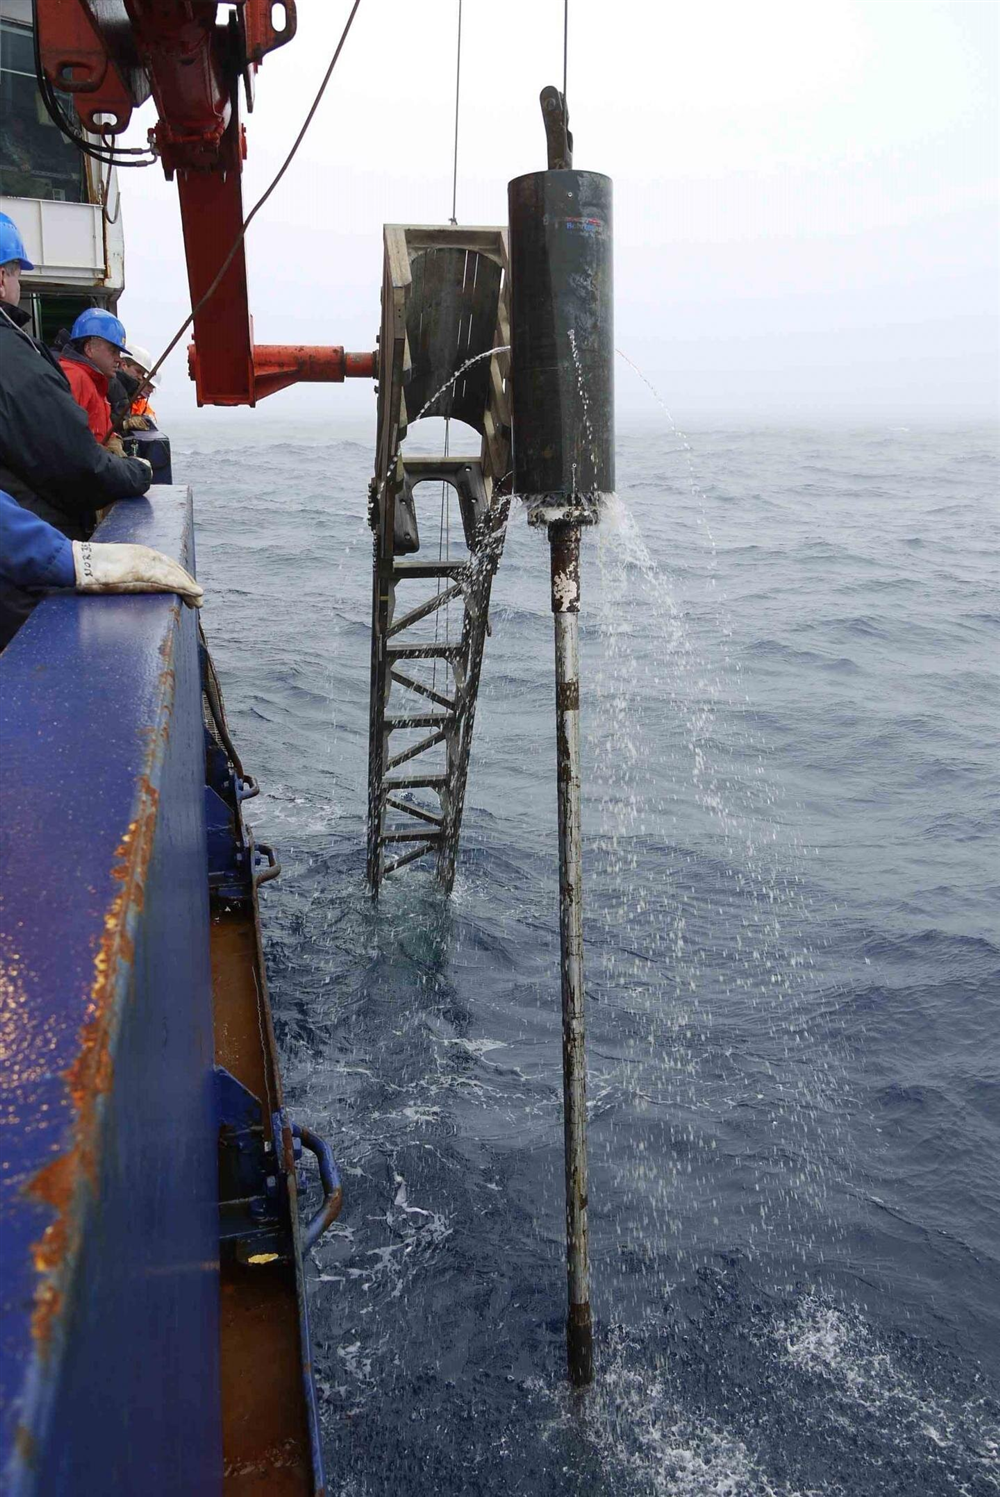 18 lõi trầm tích từ đáy biển được đưa lên tàu nghiên cứu Polastern bằng pit tông và máy dò trọng lực. 